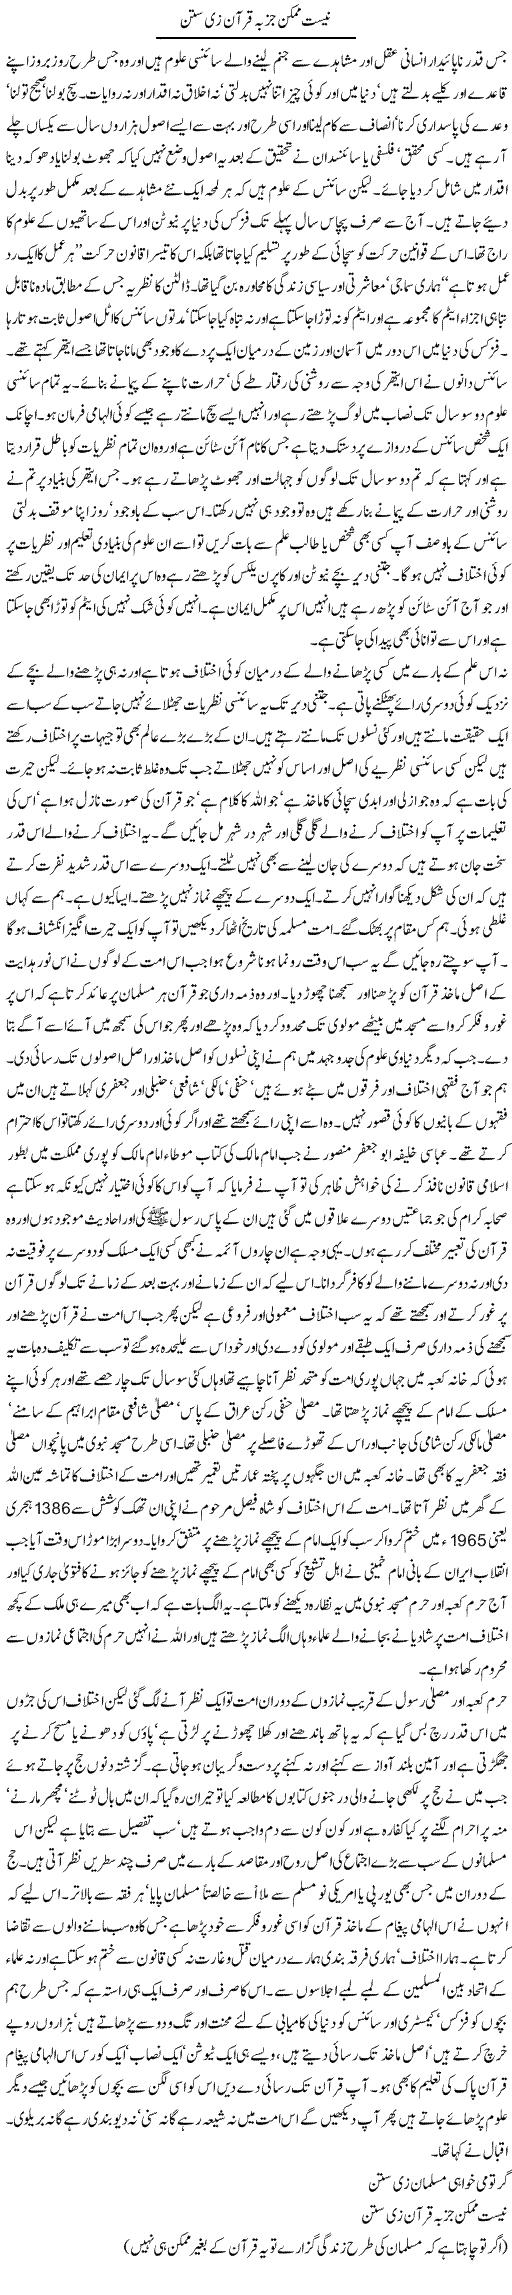 Knowledge and Islam Express Column Orya Maqbool 26 November 2011